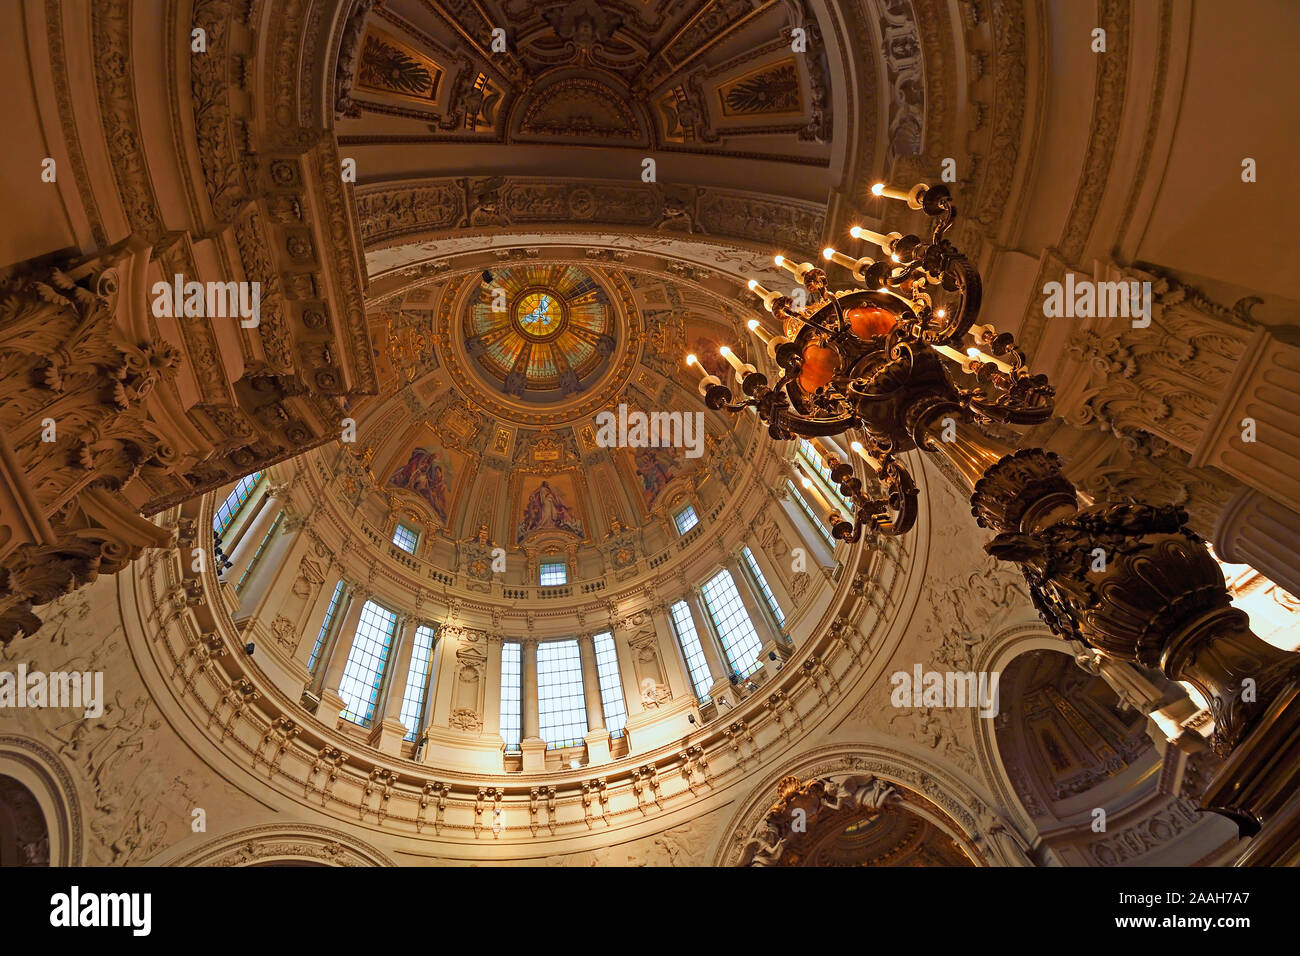 Blick in die Kuppel und historische Kandelaber, Berliner Dom, Berlino, Deutschland Foto Stock